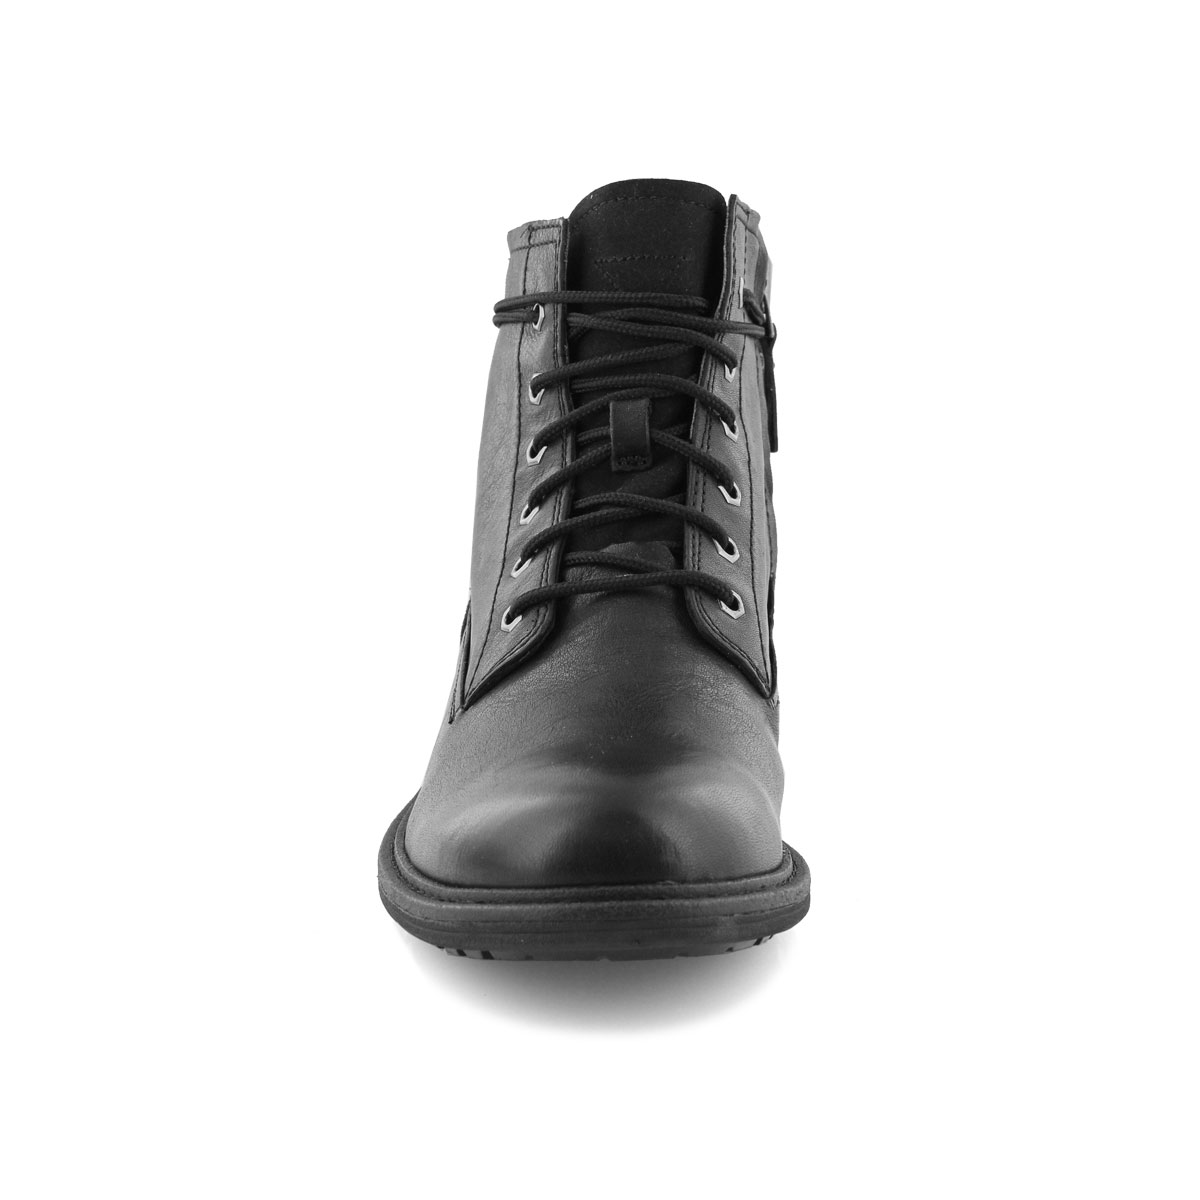 Men's MORRISON black lace up ankle boots